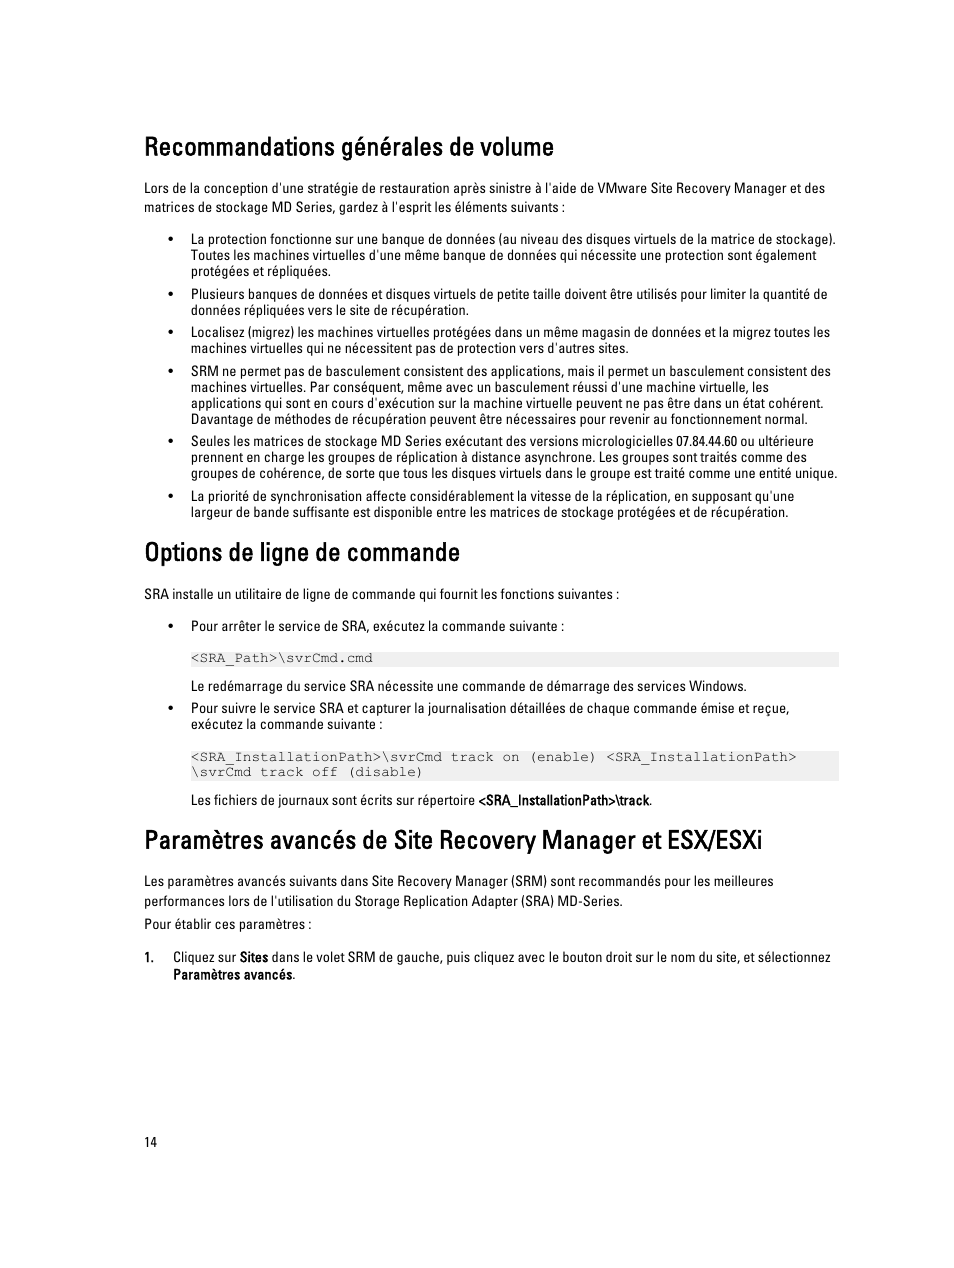 Recommandations générales de volume, Options de ligne de commande | Dell PowerVault MD3200i Manuel d'utilisation | Page 14 / 22